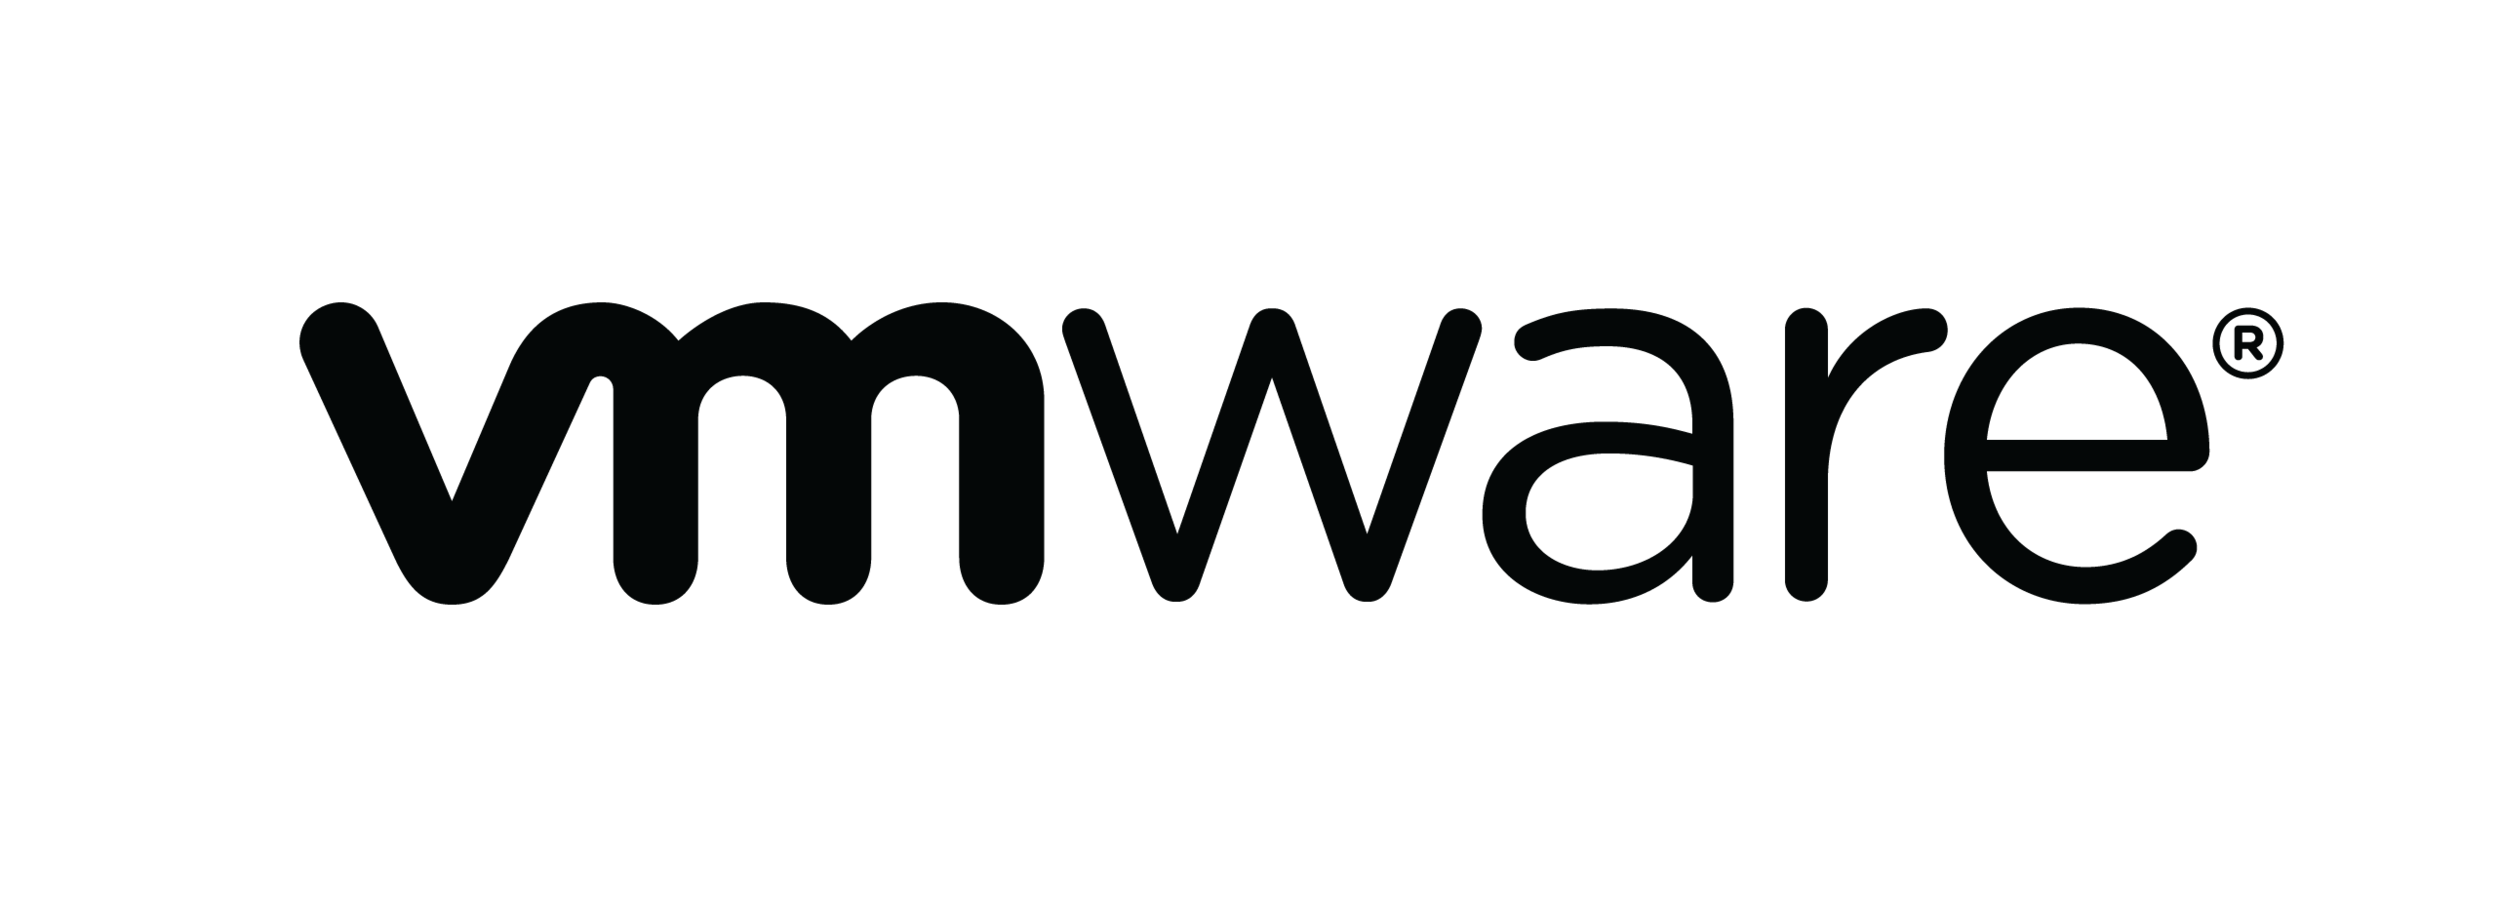 vmw-logo-vmware-logo-black-01.png